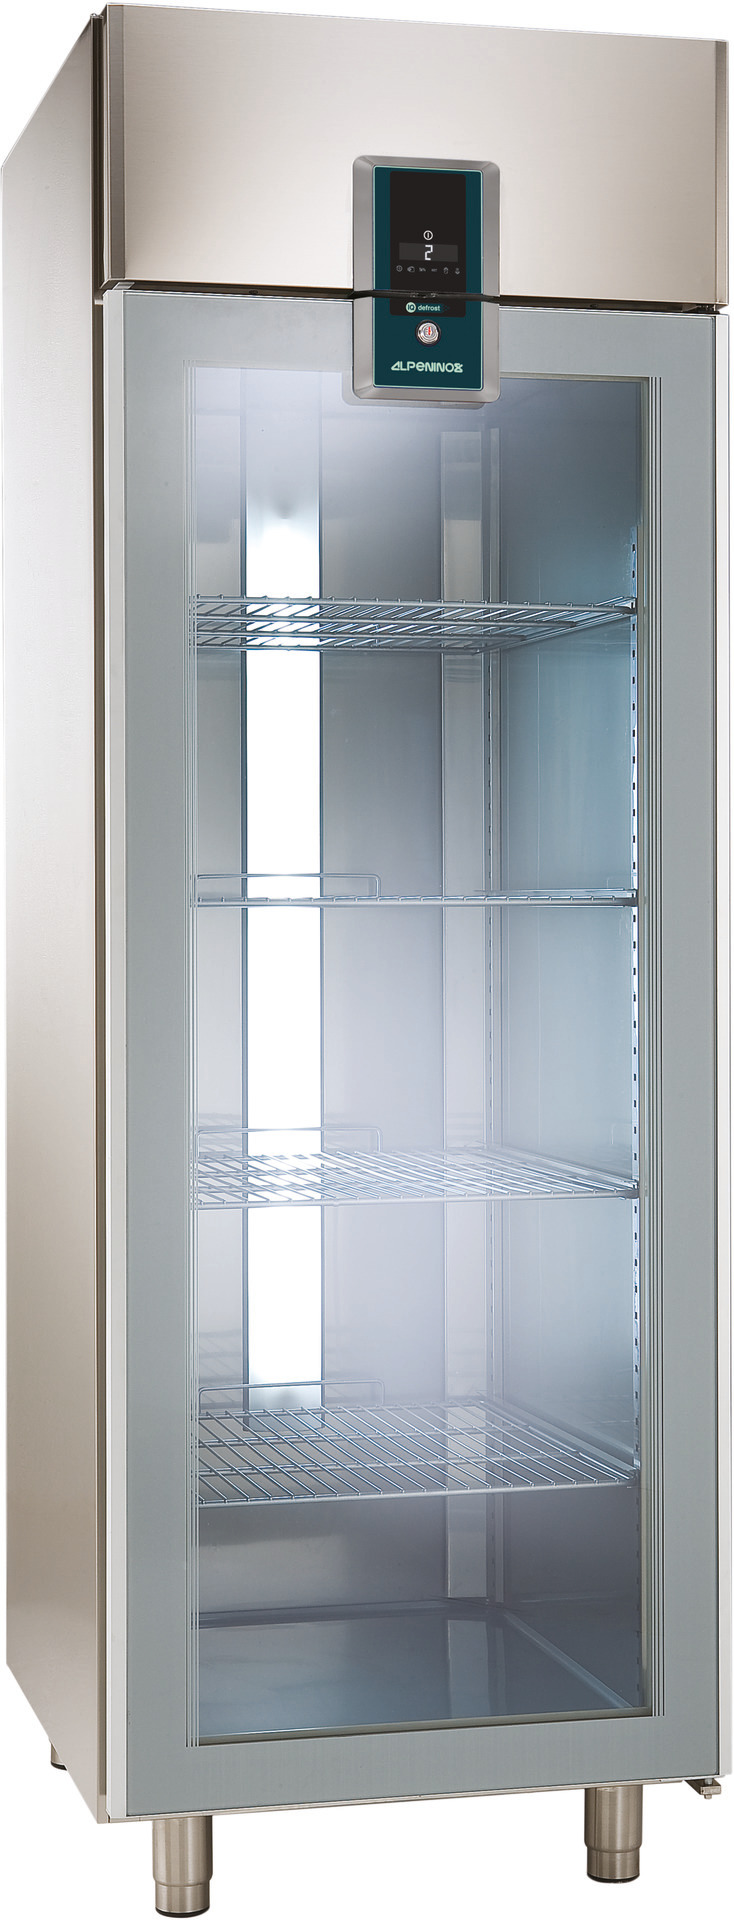 Umluft-Glastürkühlschrank 670,00 l /  für GN 2/1 / zentralgekühlt / Edelstahl